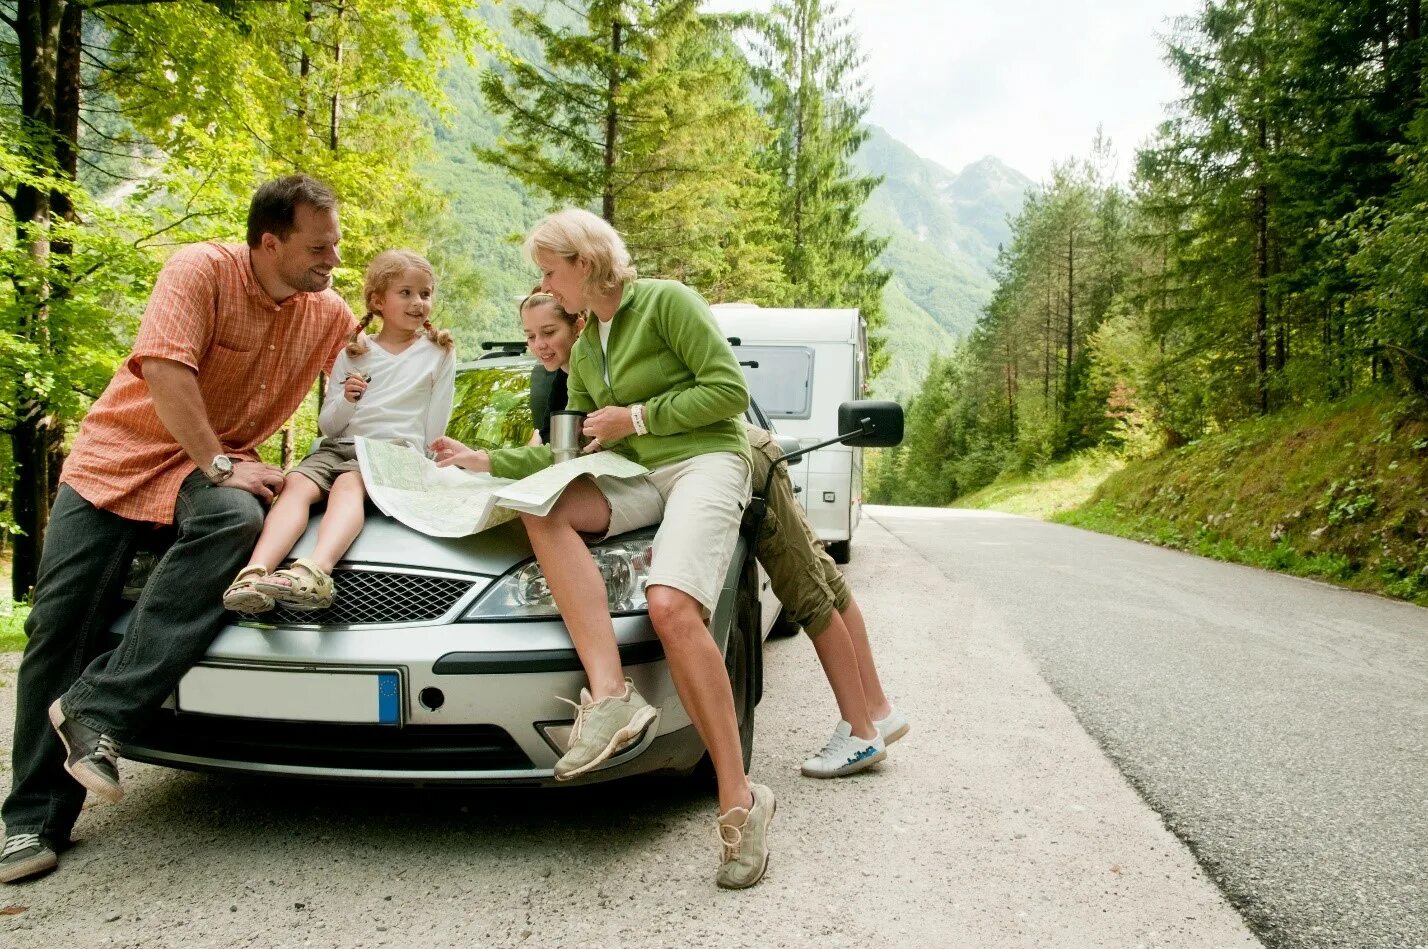 Едем на дачу отдыхать. Семья в машине. Путешествие с семьей. Путешествие на машине. Лучший семейный автомобиль для путешествий.